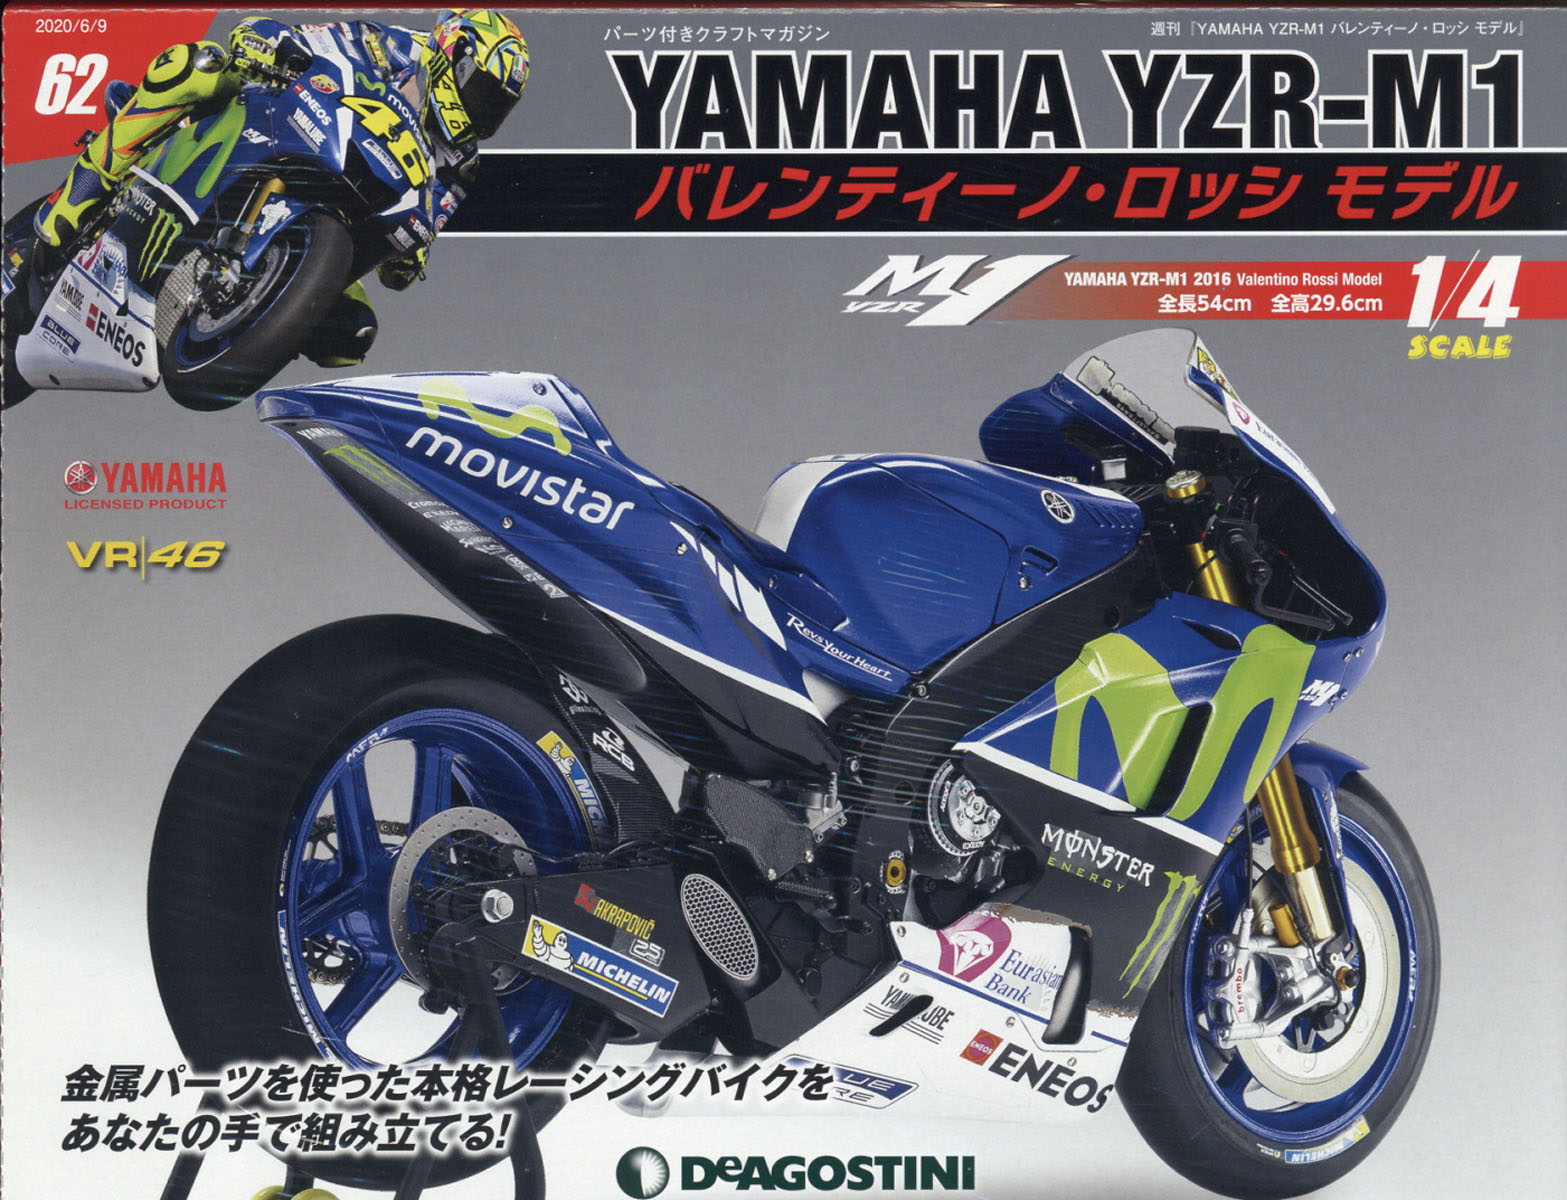 週刊 YAMAHA YZR-1 バレンティーノ・ロッシ モデル 2020年 6/9号 [雑誌]